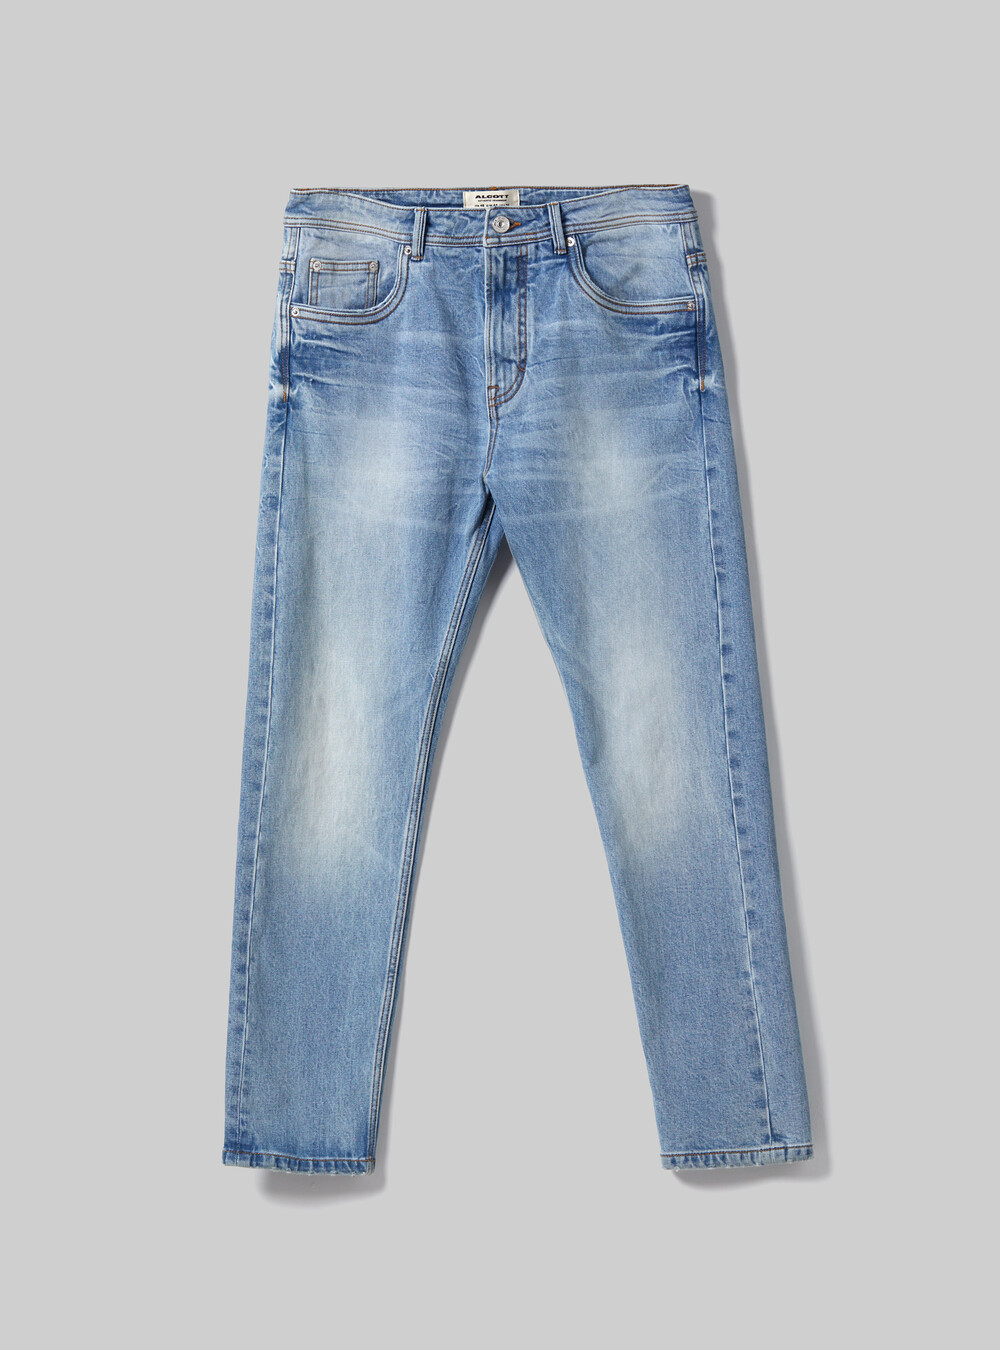 Denim Jeans Cotton/Polyester Thread 250yds Denim - 073650890895